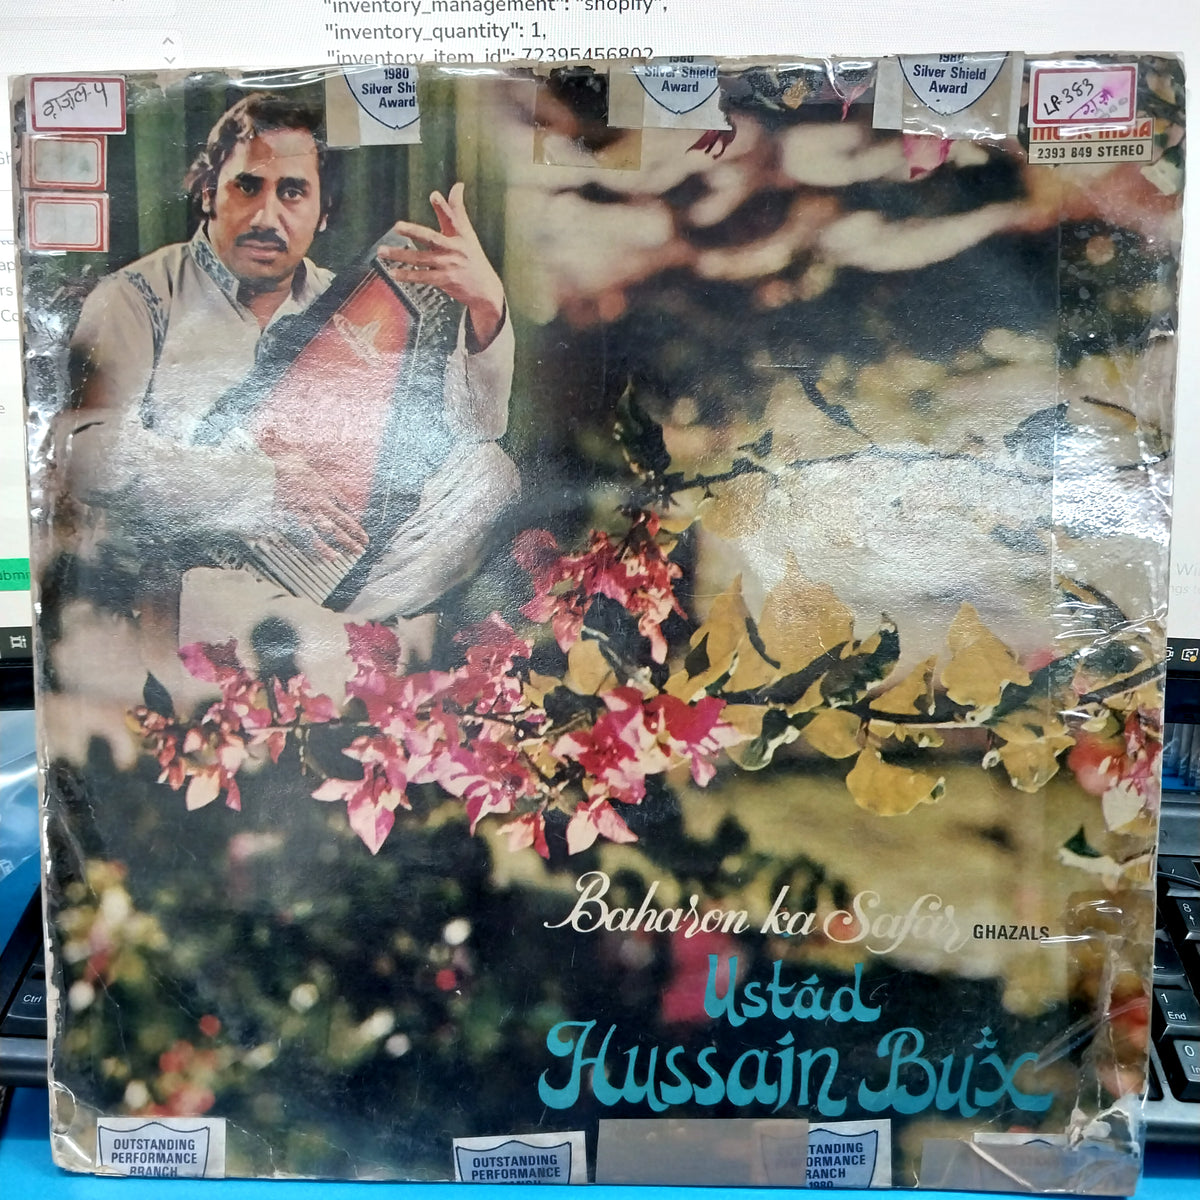 Ustad Hussain Bux - Baharon Ka Safar (Ghaxals) (Vinyl)